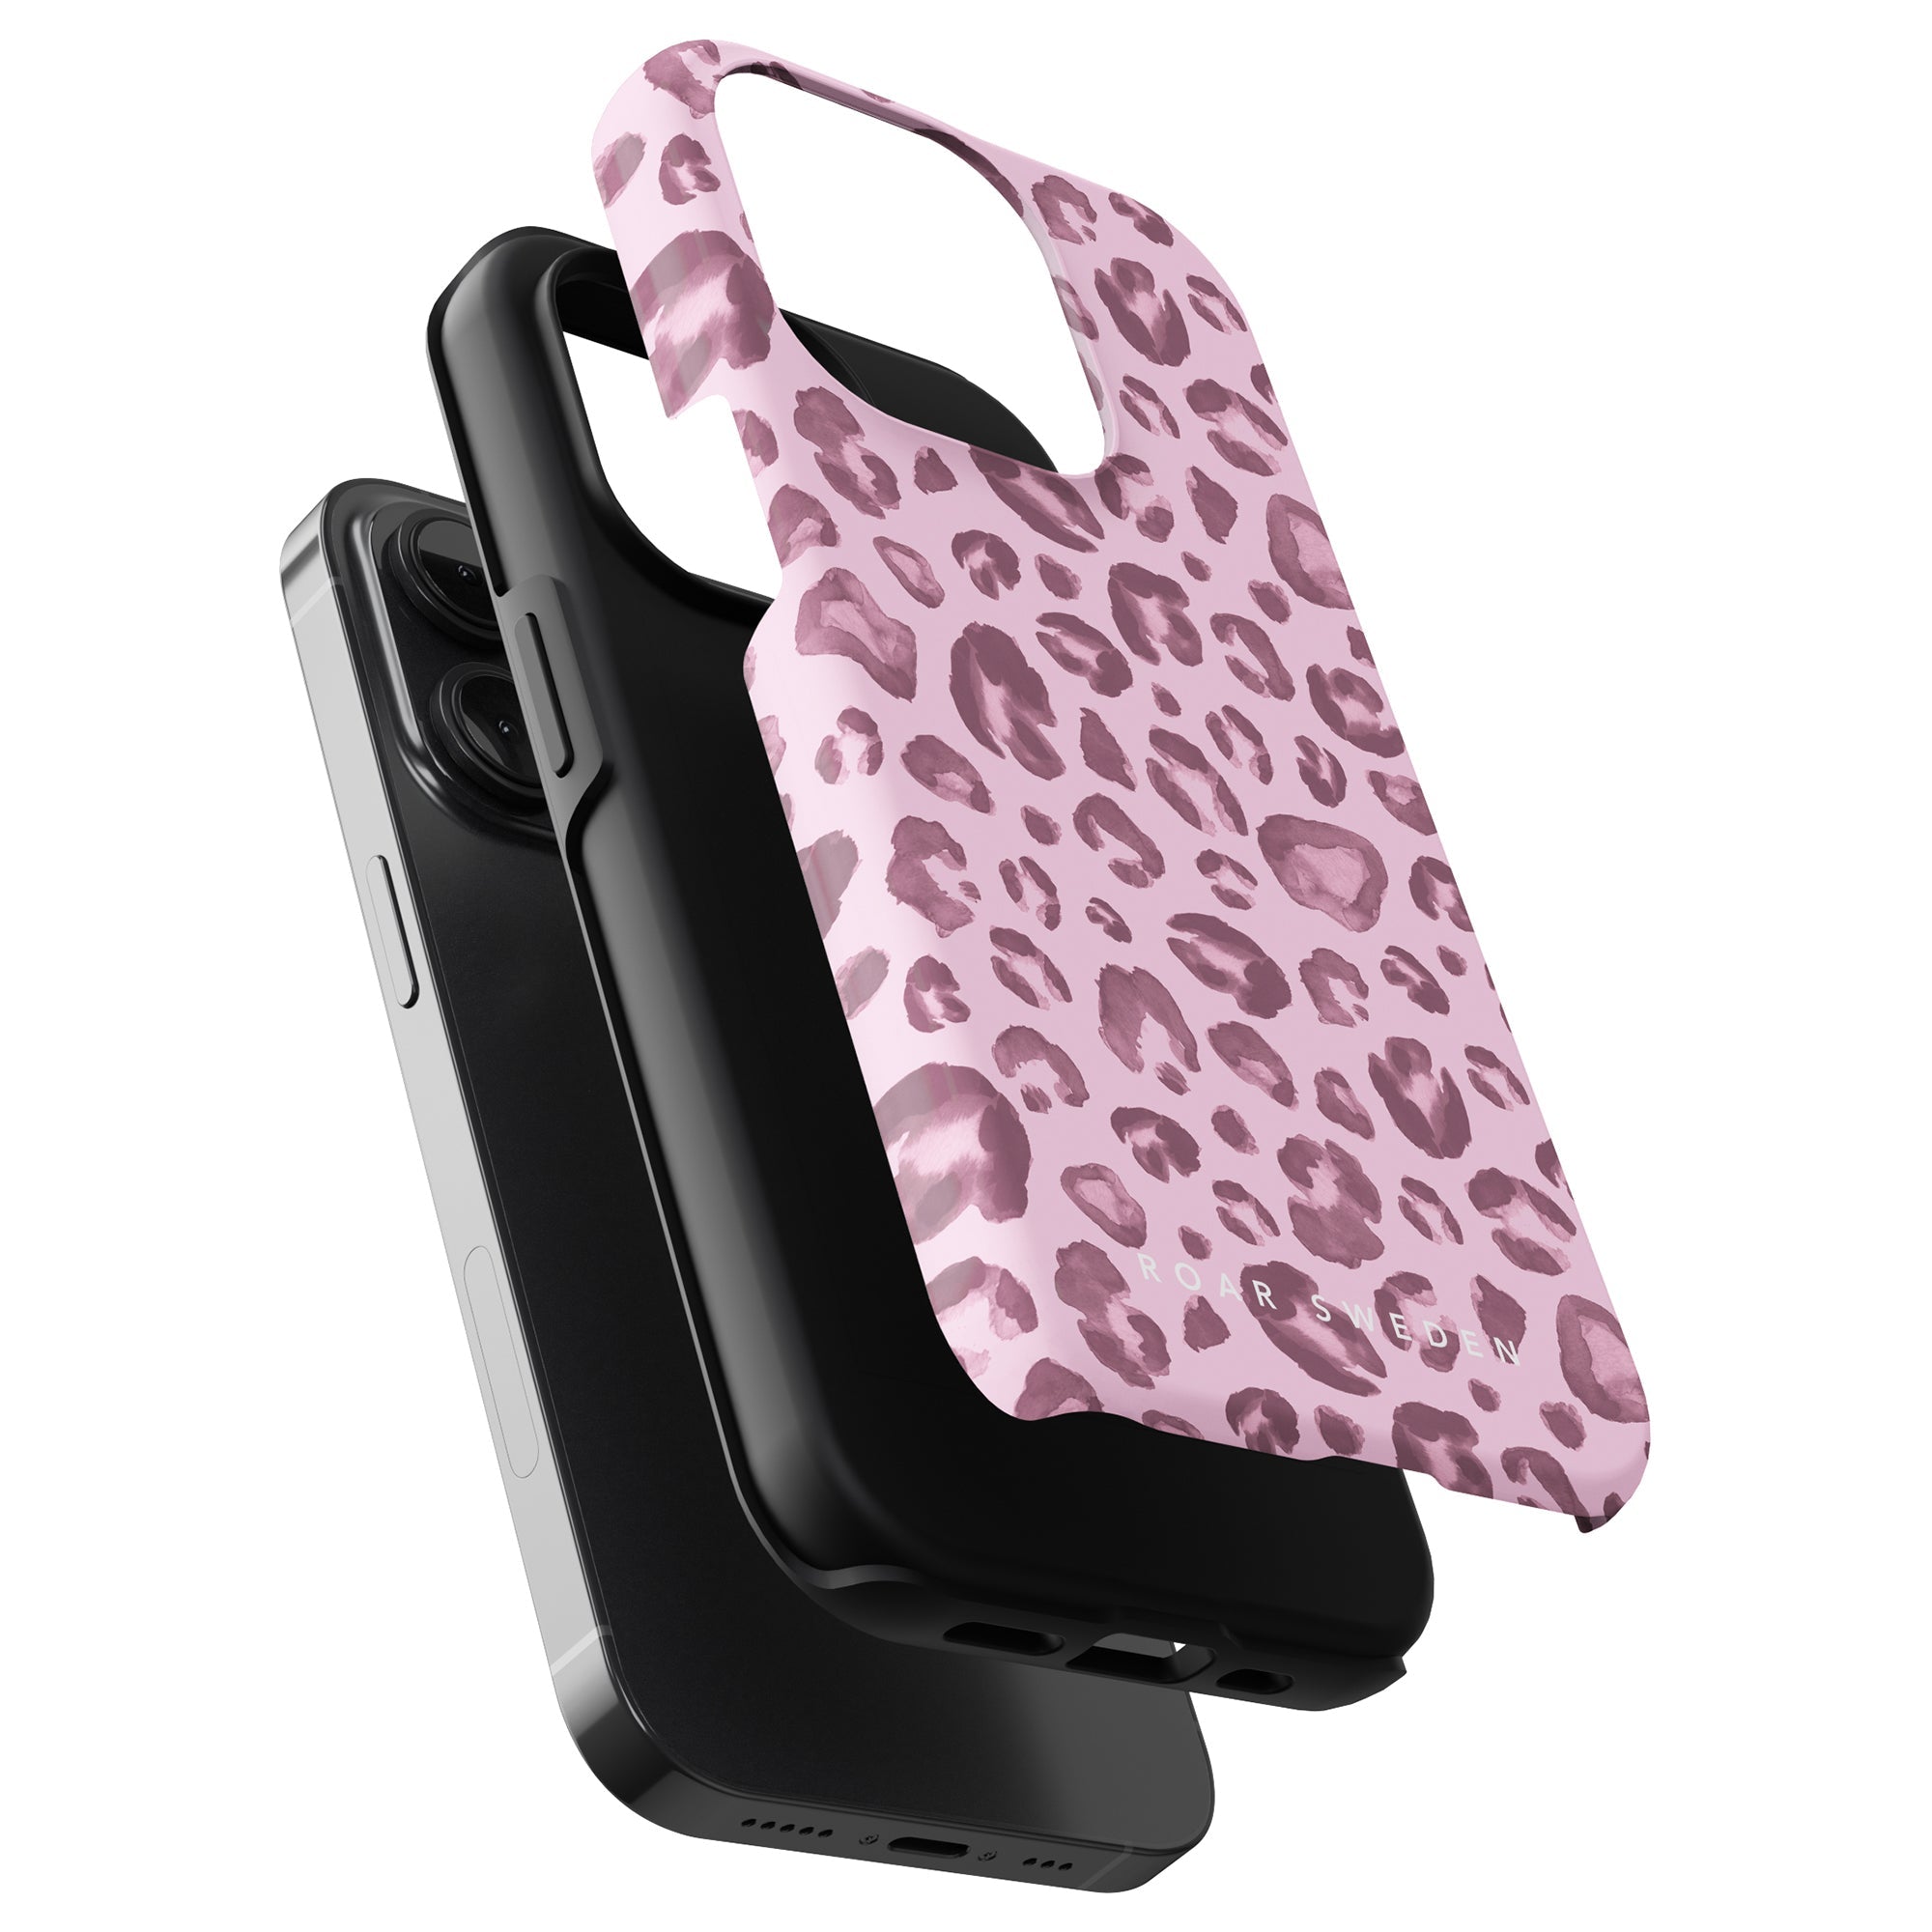 A Pinky Spots - Tufft fodral för iPhone 11 Pro.